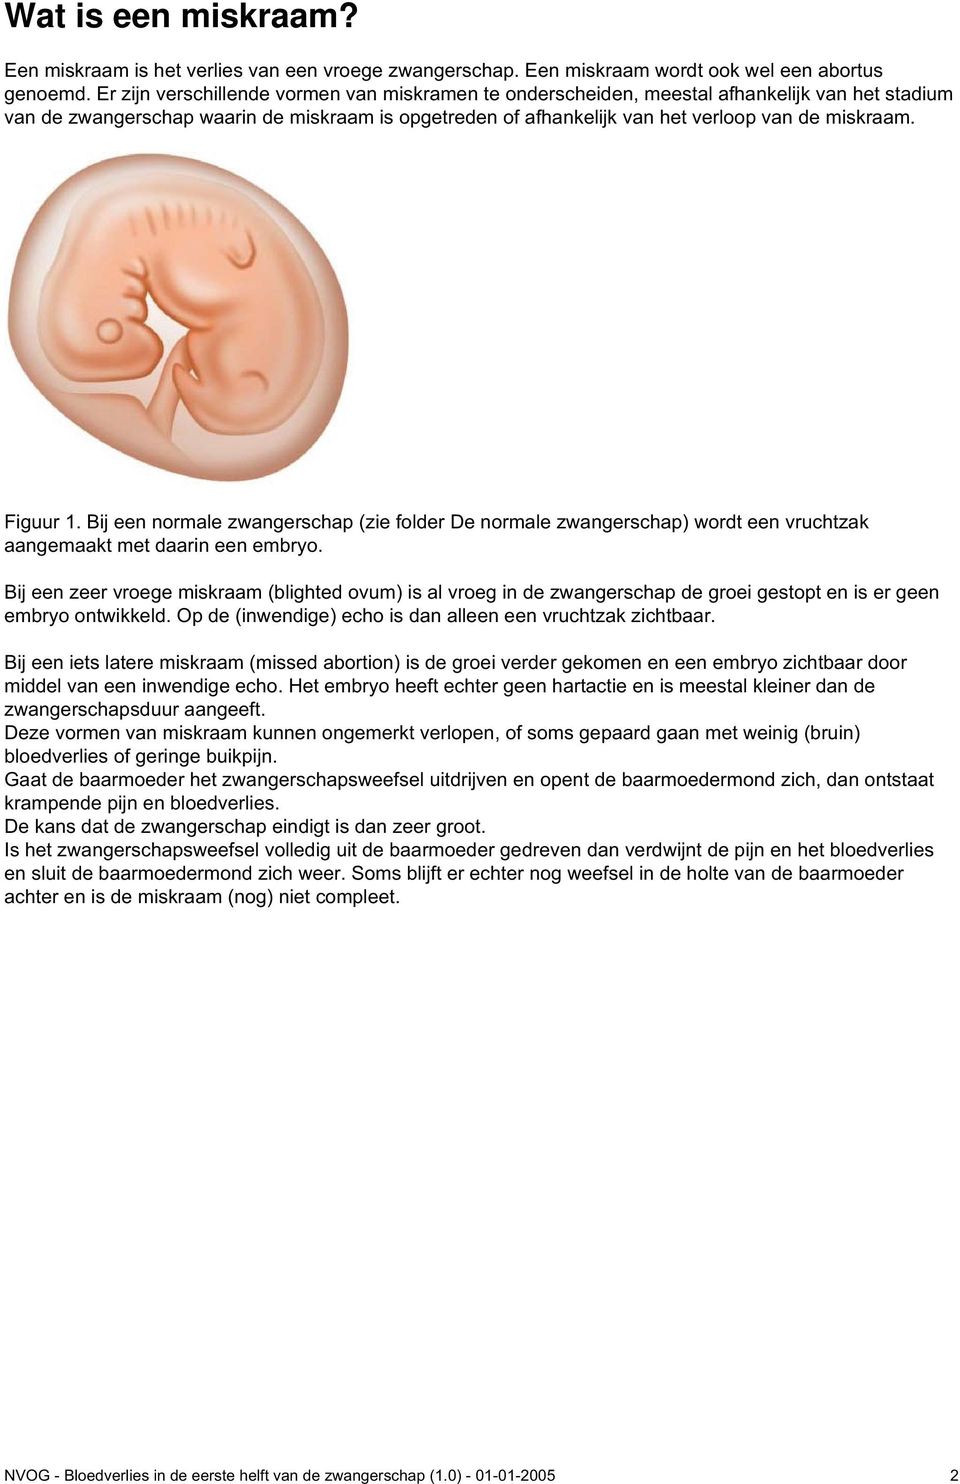 Figuur 1. Bij een normale zwangerschap (zie folder De normale zwangerschap) wordt een vruchtzak aangemaakt met daarin een embryo.